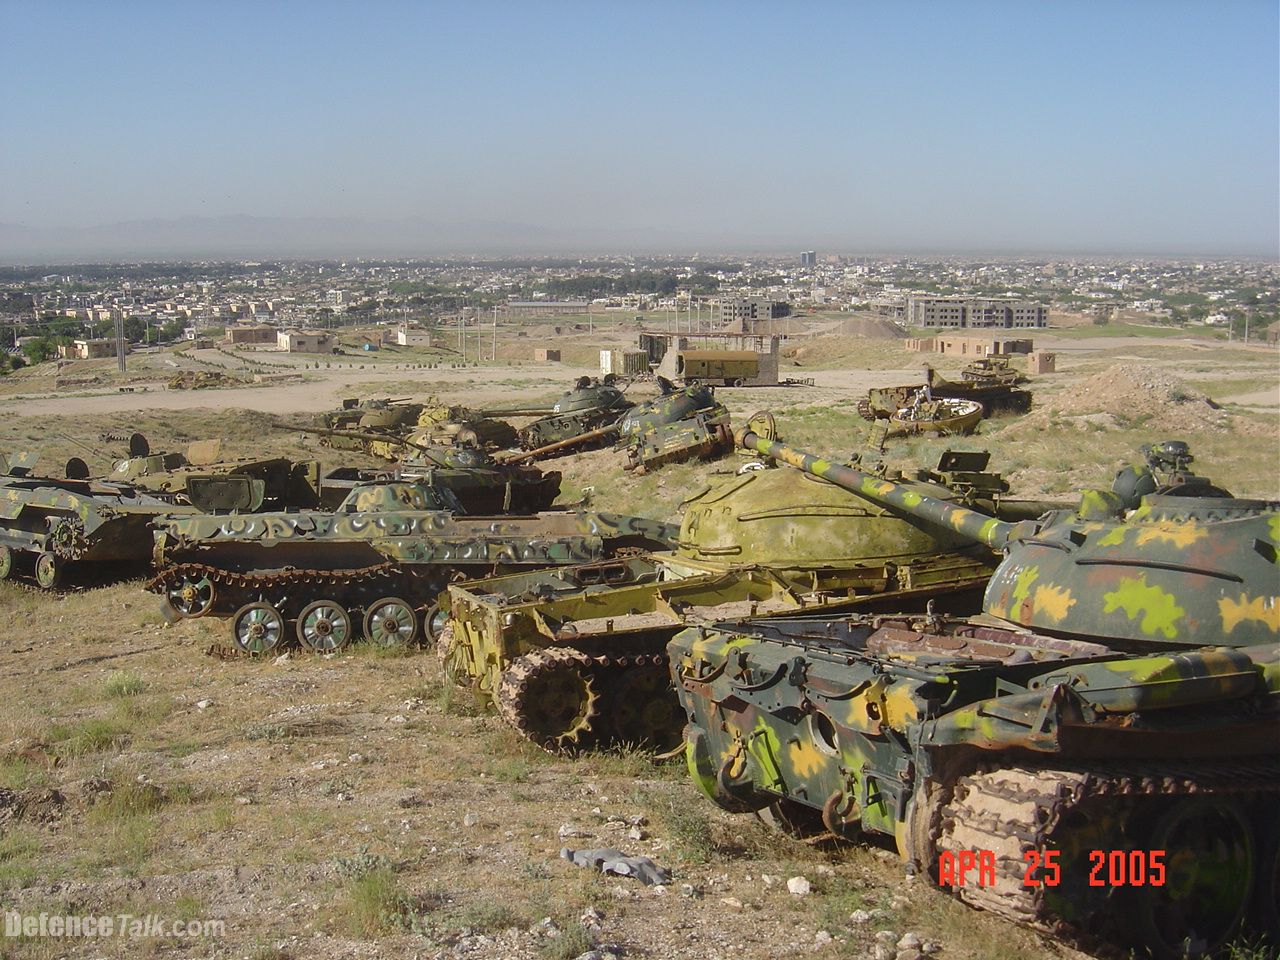 T-59s & APCs in Herat